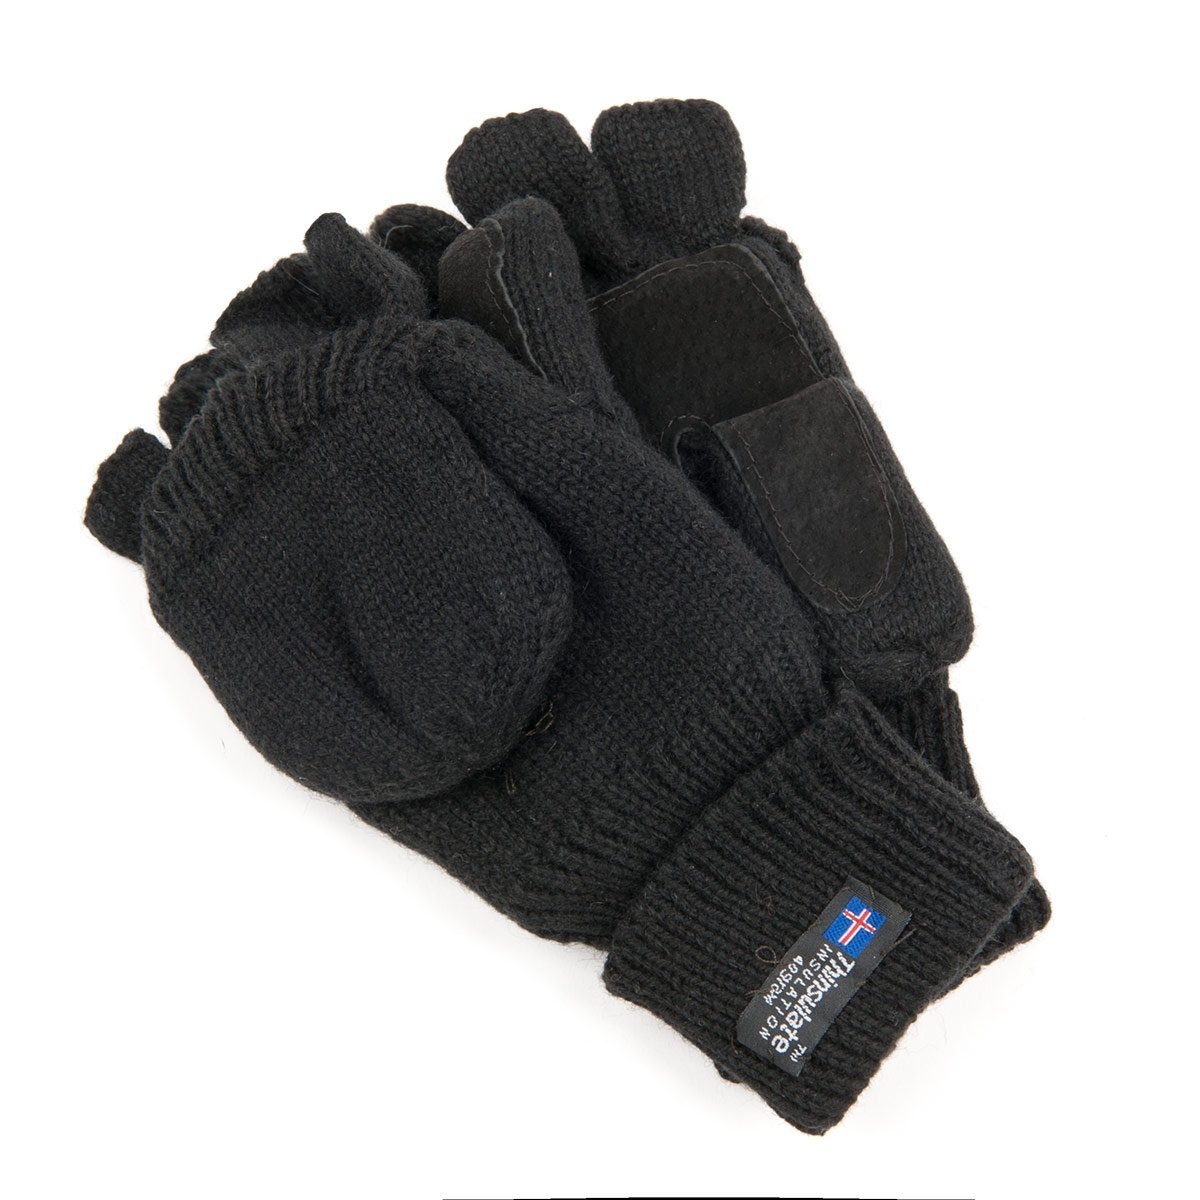 Schwarze Strickhandschuhe Handschuhe Accessoires Handschuhe Strickhandschuhe 